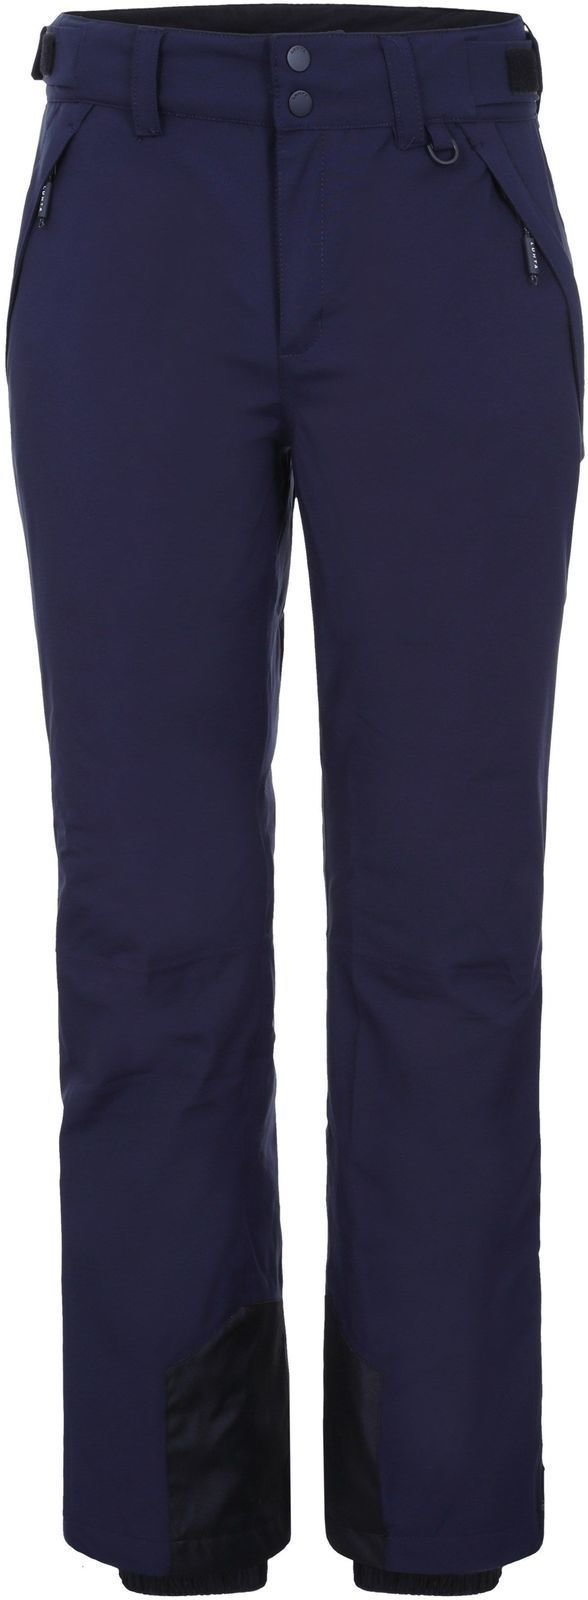 Παντελόνια Σκι Luhta Koria Mens Ski Pants Dark Blue 56